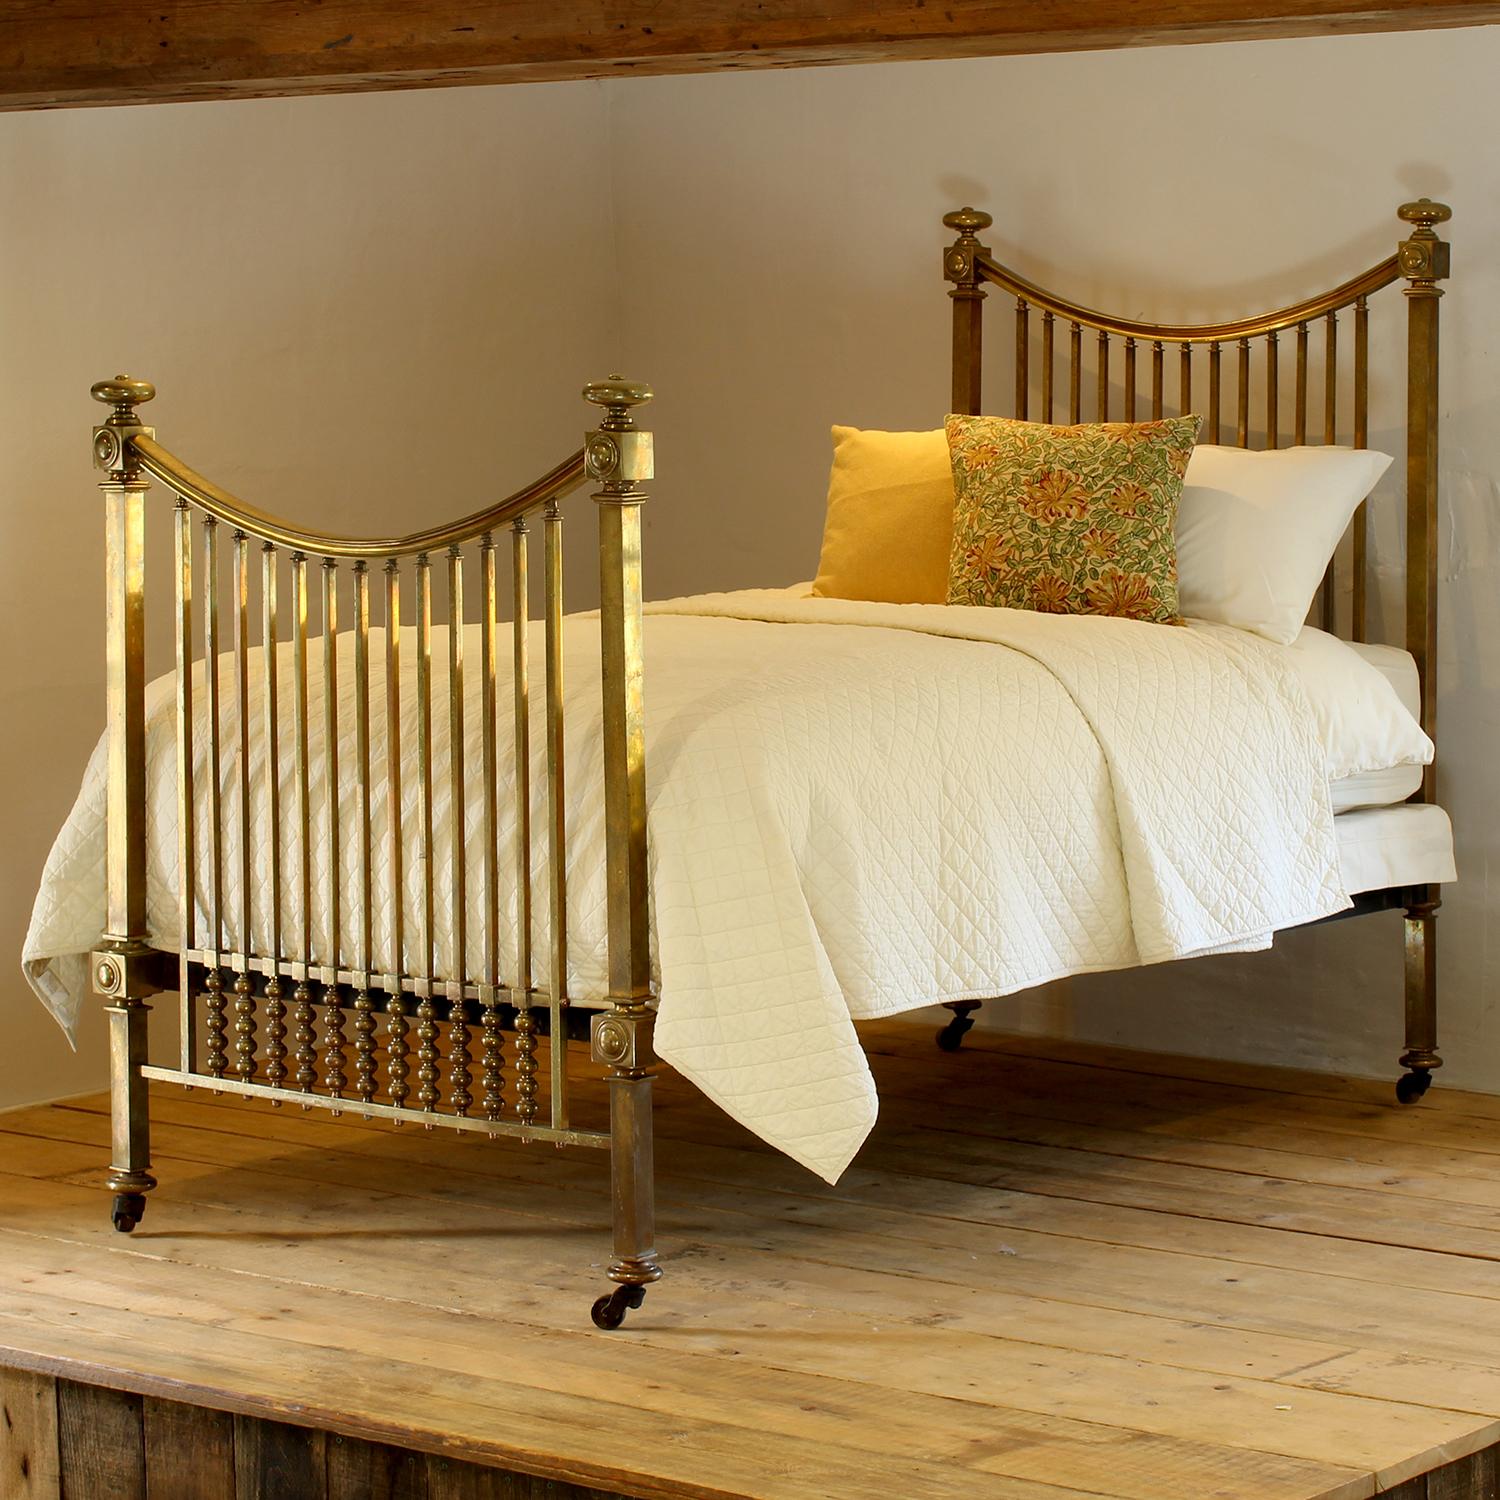 Eine hervorragende Top-Qualität alle Messing viktorianischen einzigen antiken Bett mit dekorativen Messingbeschläge und geschwungenen Schienen.
Das Bett hat eine gealterte Patina auf dem Messing und es gibt ein paar Dellen auf der oberen Schiene.